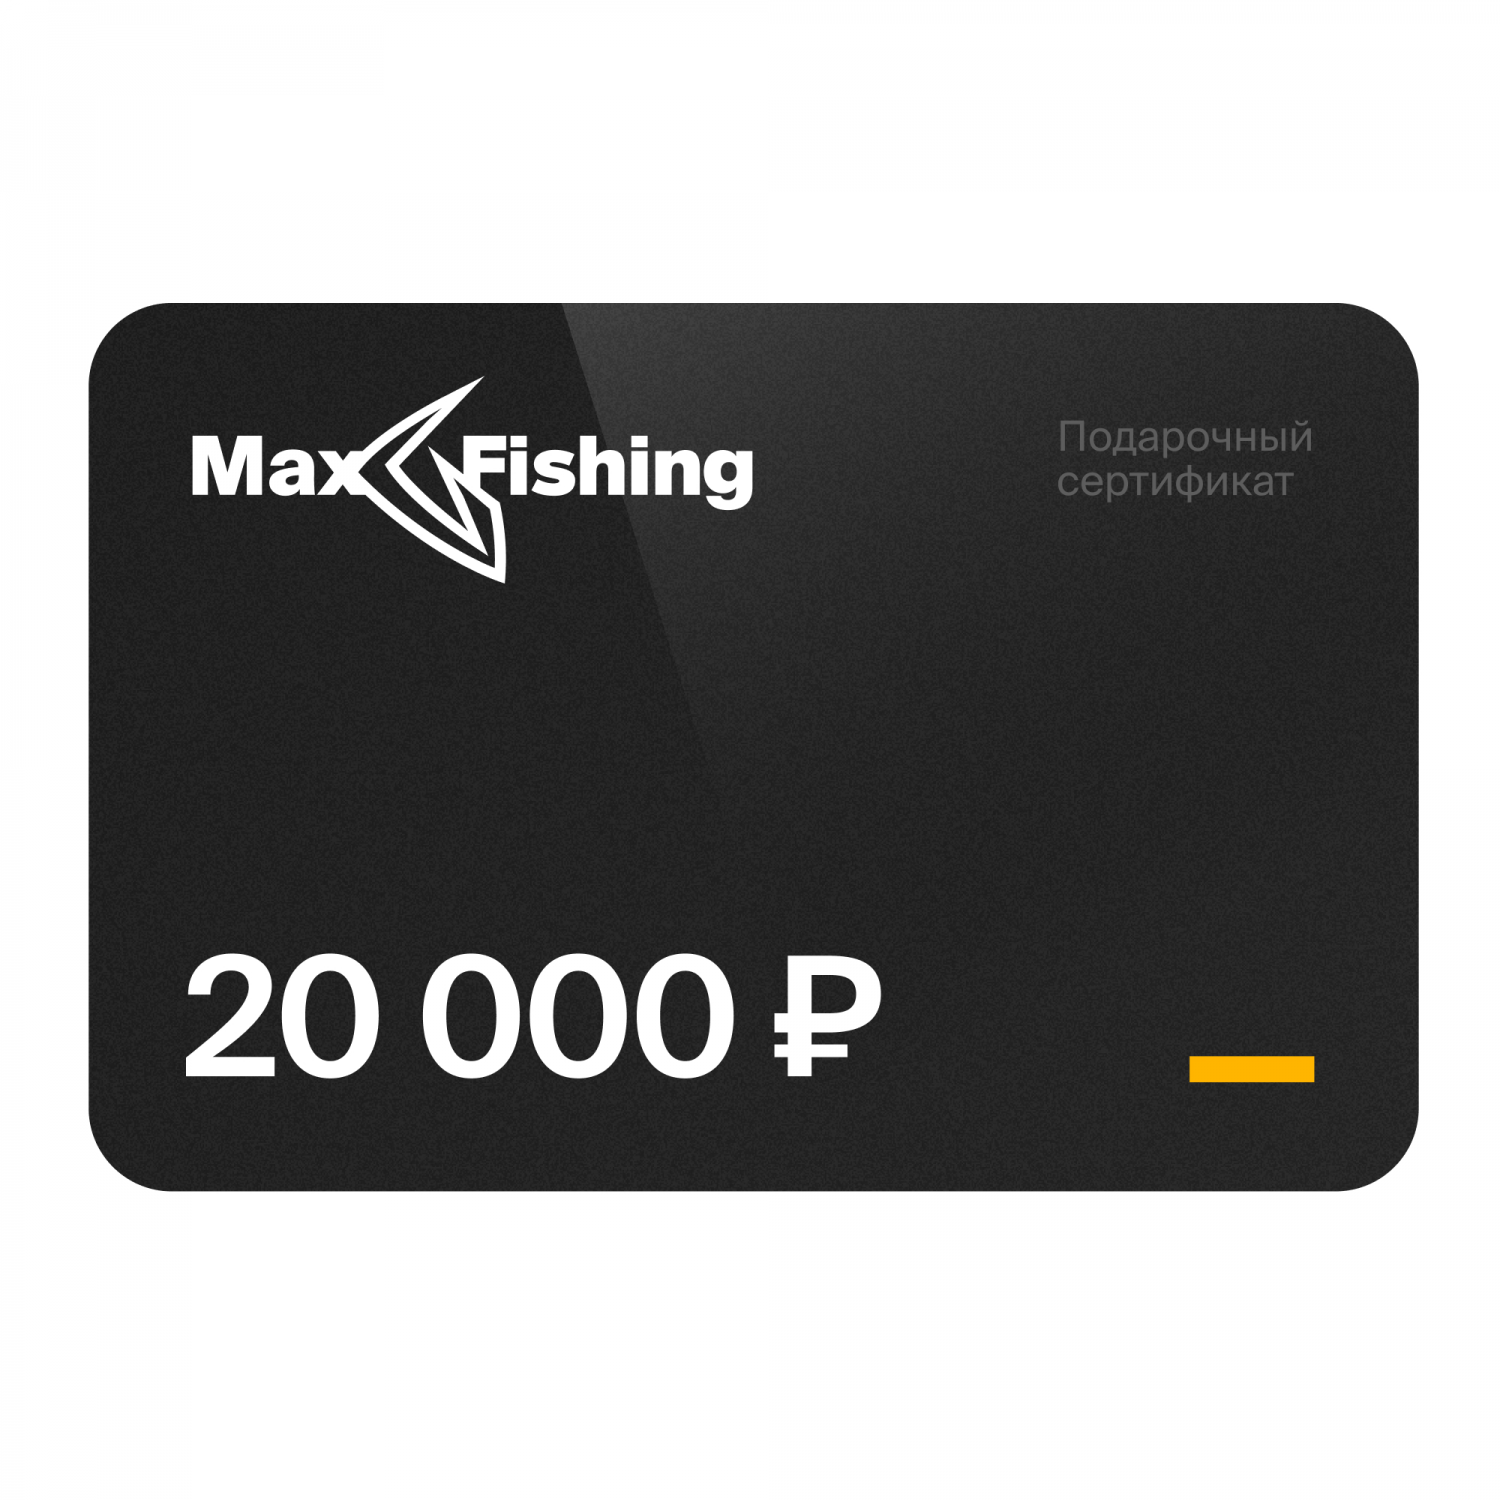 Подарочный сертификат MaxFishing 20 000 ₽ подарочный сертификат maxfishing 15